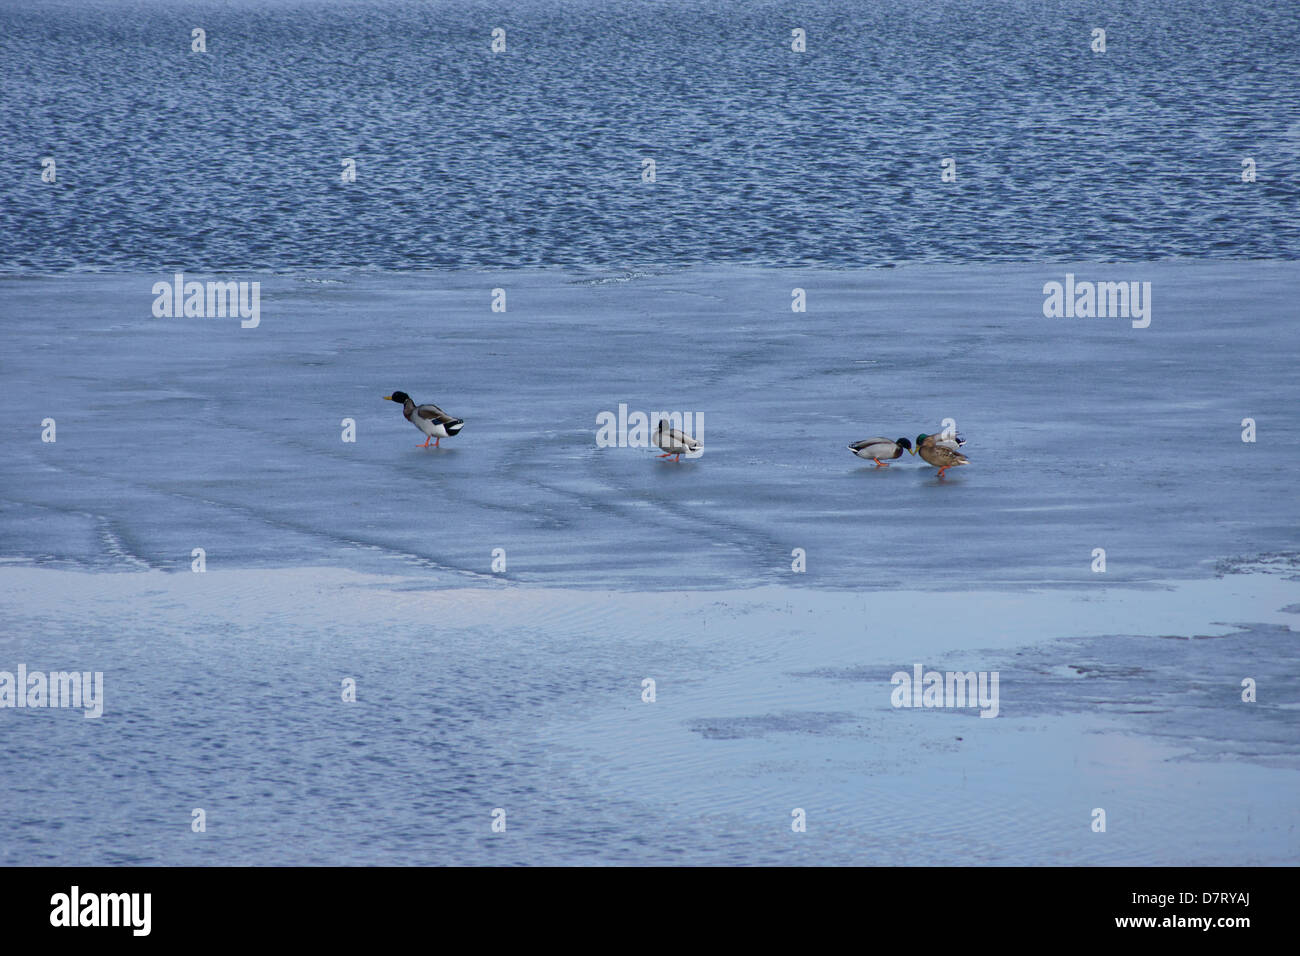 Ducks on the ice Stock Photo